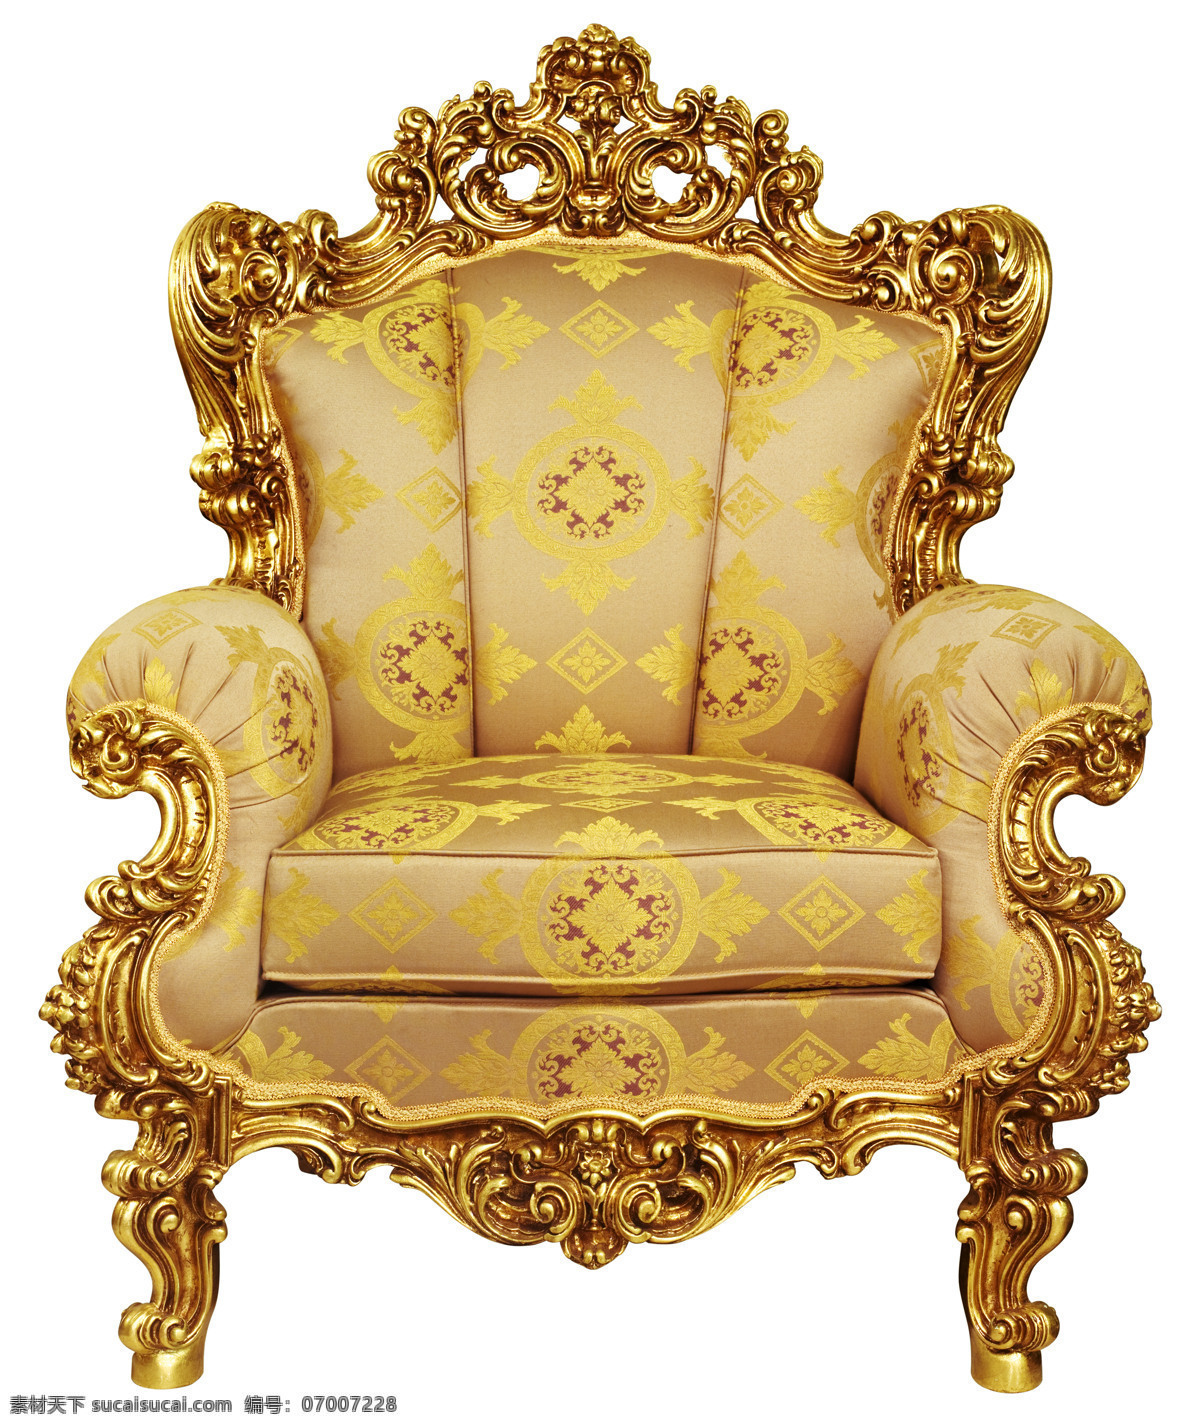 欧式 椅子 欧式椅子 淘图网 高清图片 jpg图库 摄影图片 沙发 高档椅了 家具电器 生活百科